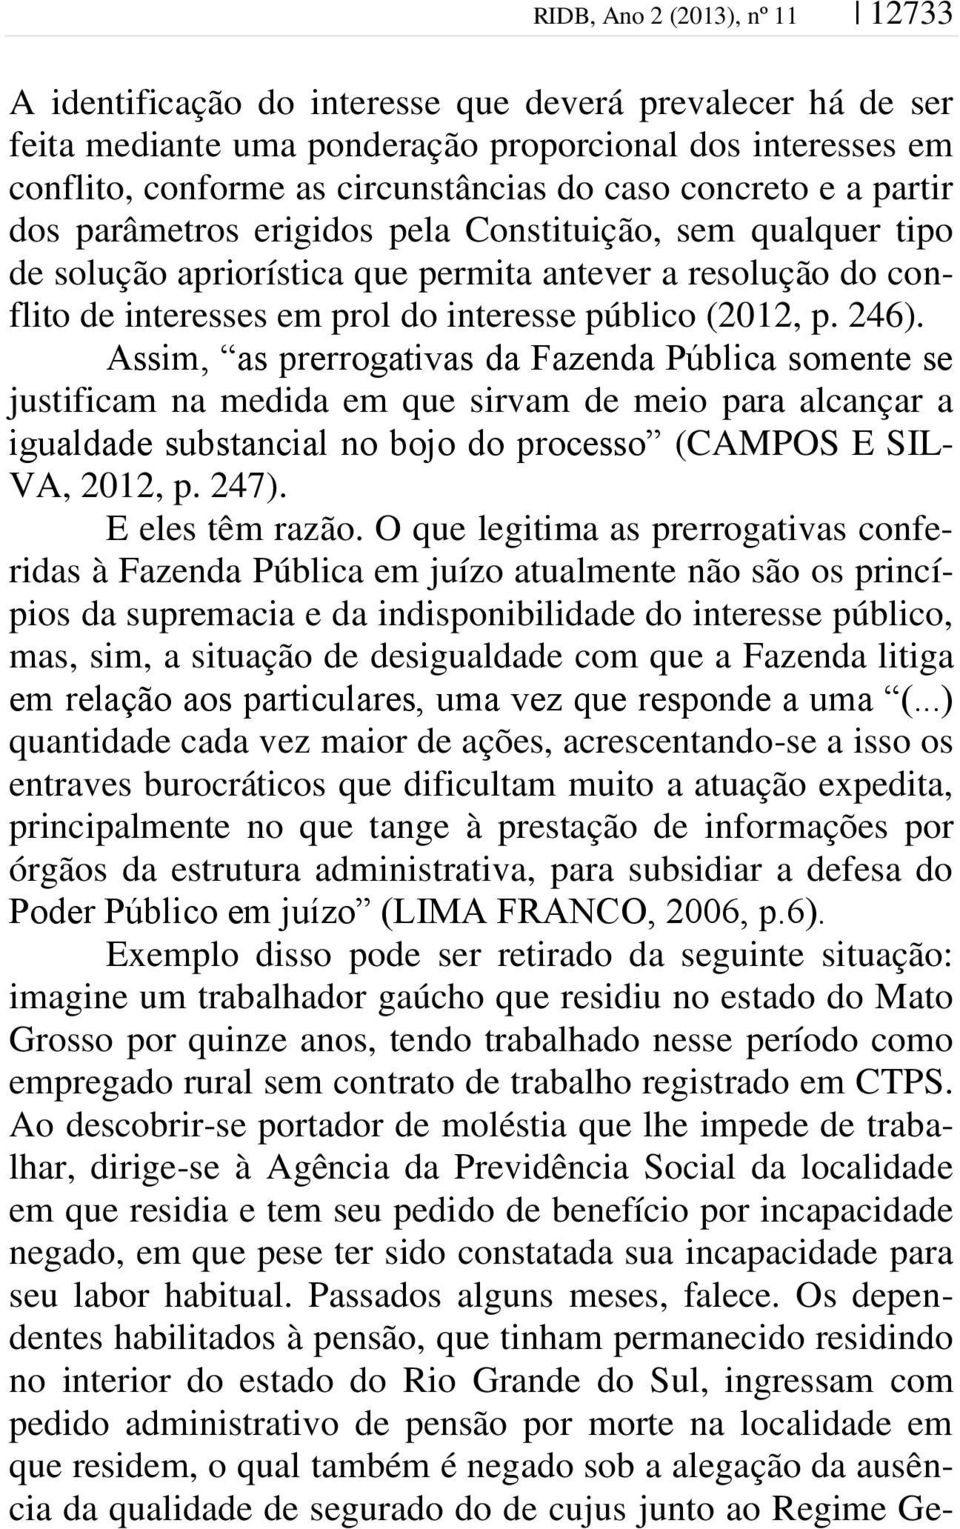 p. 246). Assim, as prerrogativas da Fazenda Pública somente se justificam na medida em que sirvam de meio para alcançar a igualdade substancial no bojo do processo (CAMPOS E SIL- VA, 2012, p. 247).